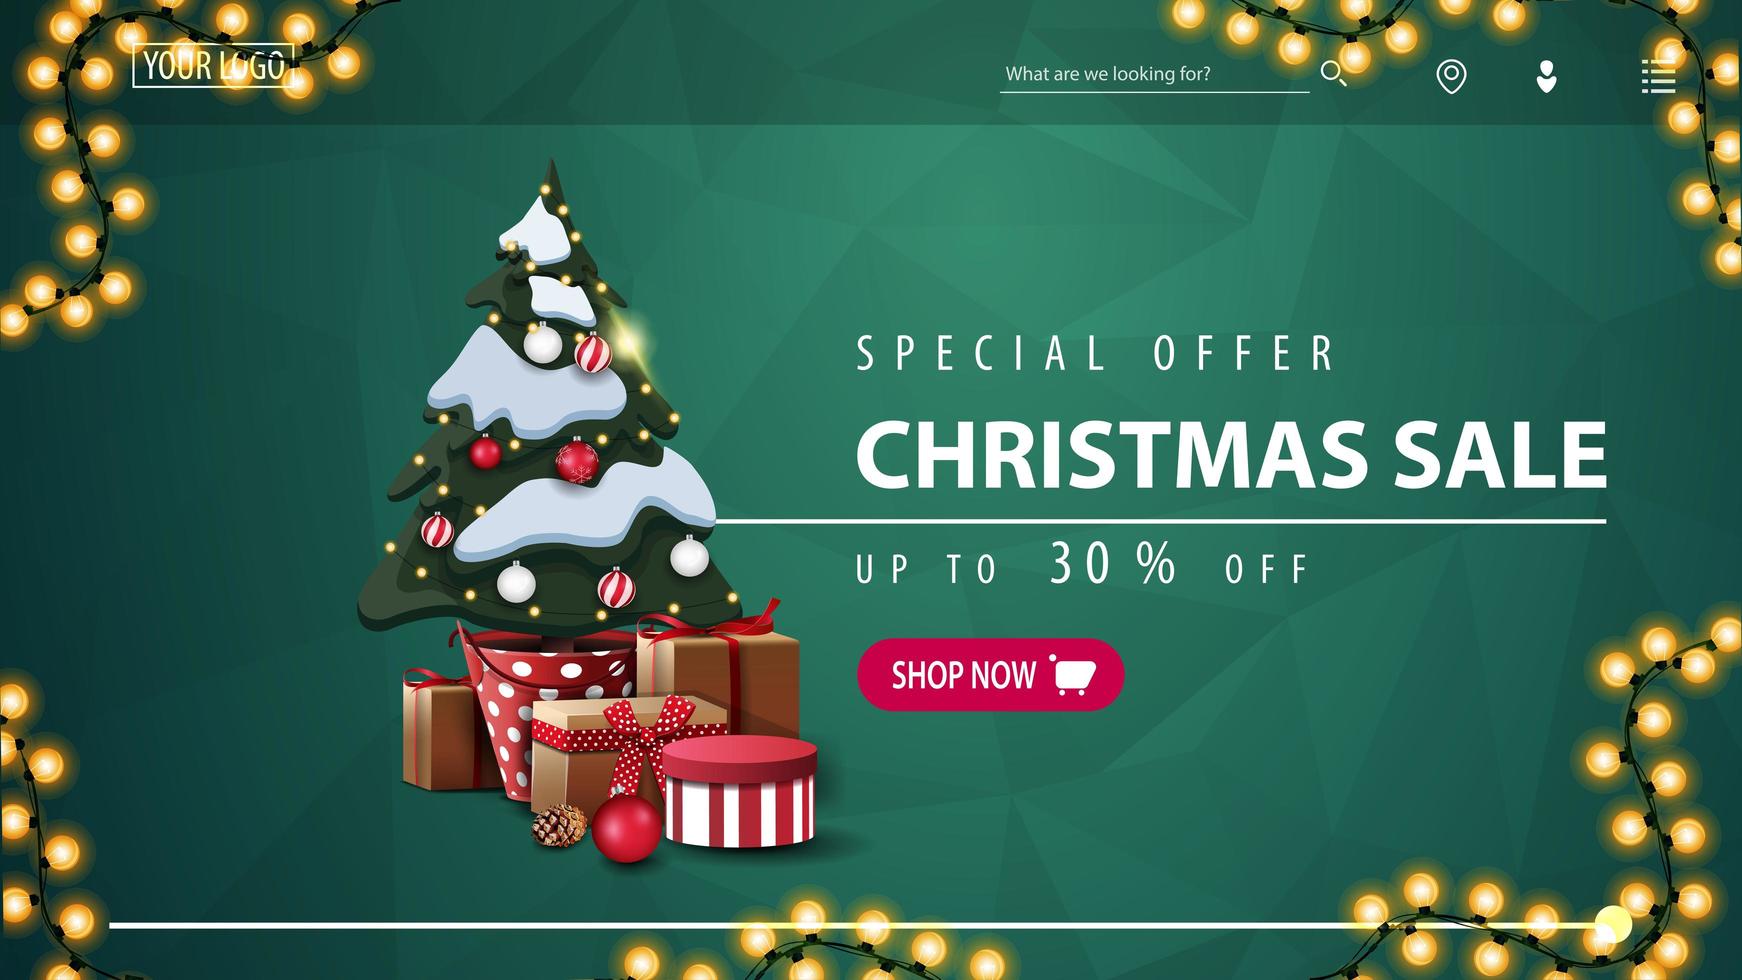 offerta speciale, saldi natalizi, fino a 30 di sconto, banner sconto verde per sito web con struttura poligonale, ghirlanda, bottone rosa e albero di natale in una pentola con regali vettore